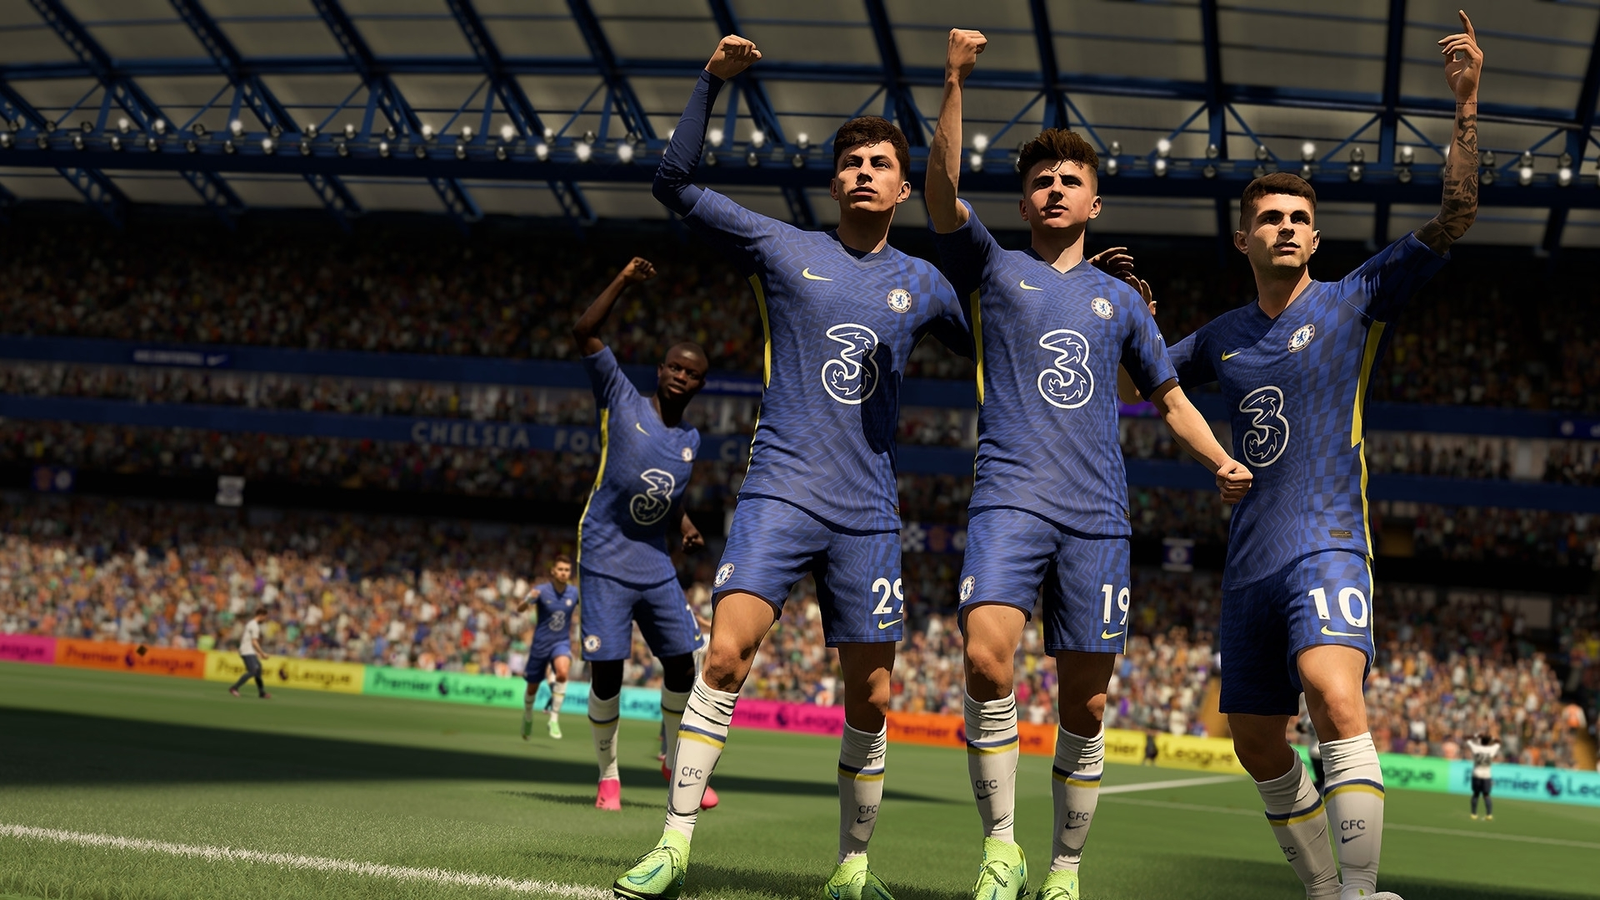 FIFA 22 em review: gameplay mais realista e modo VOLTA com foco no